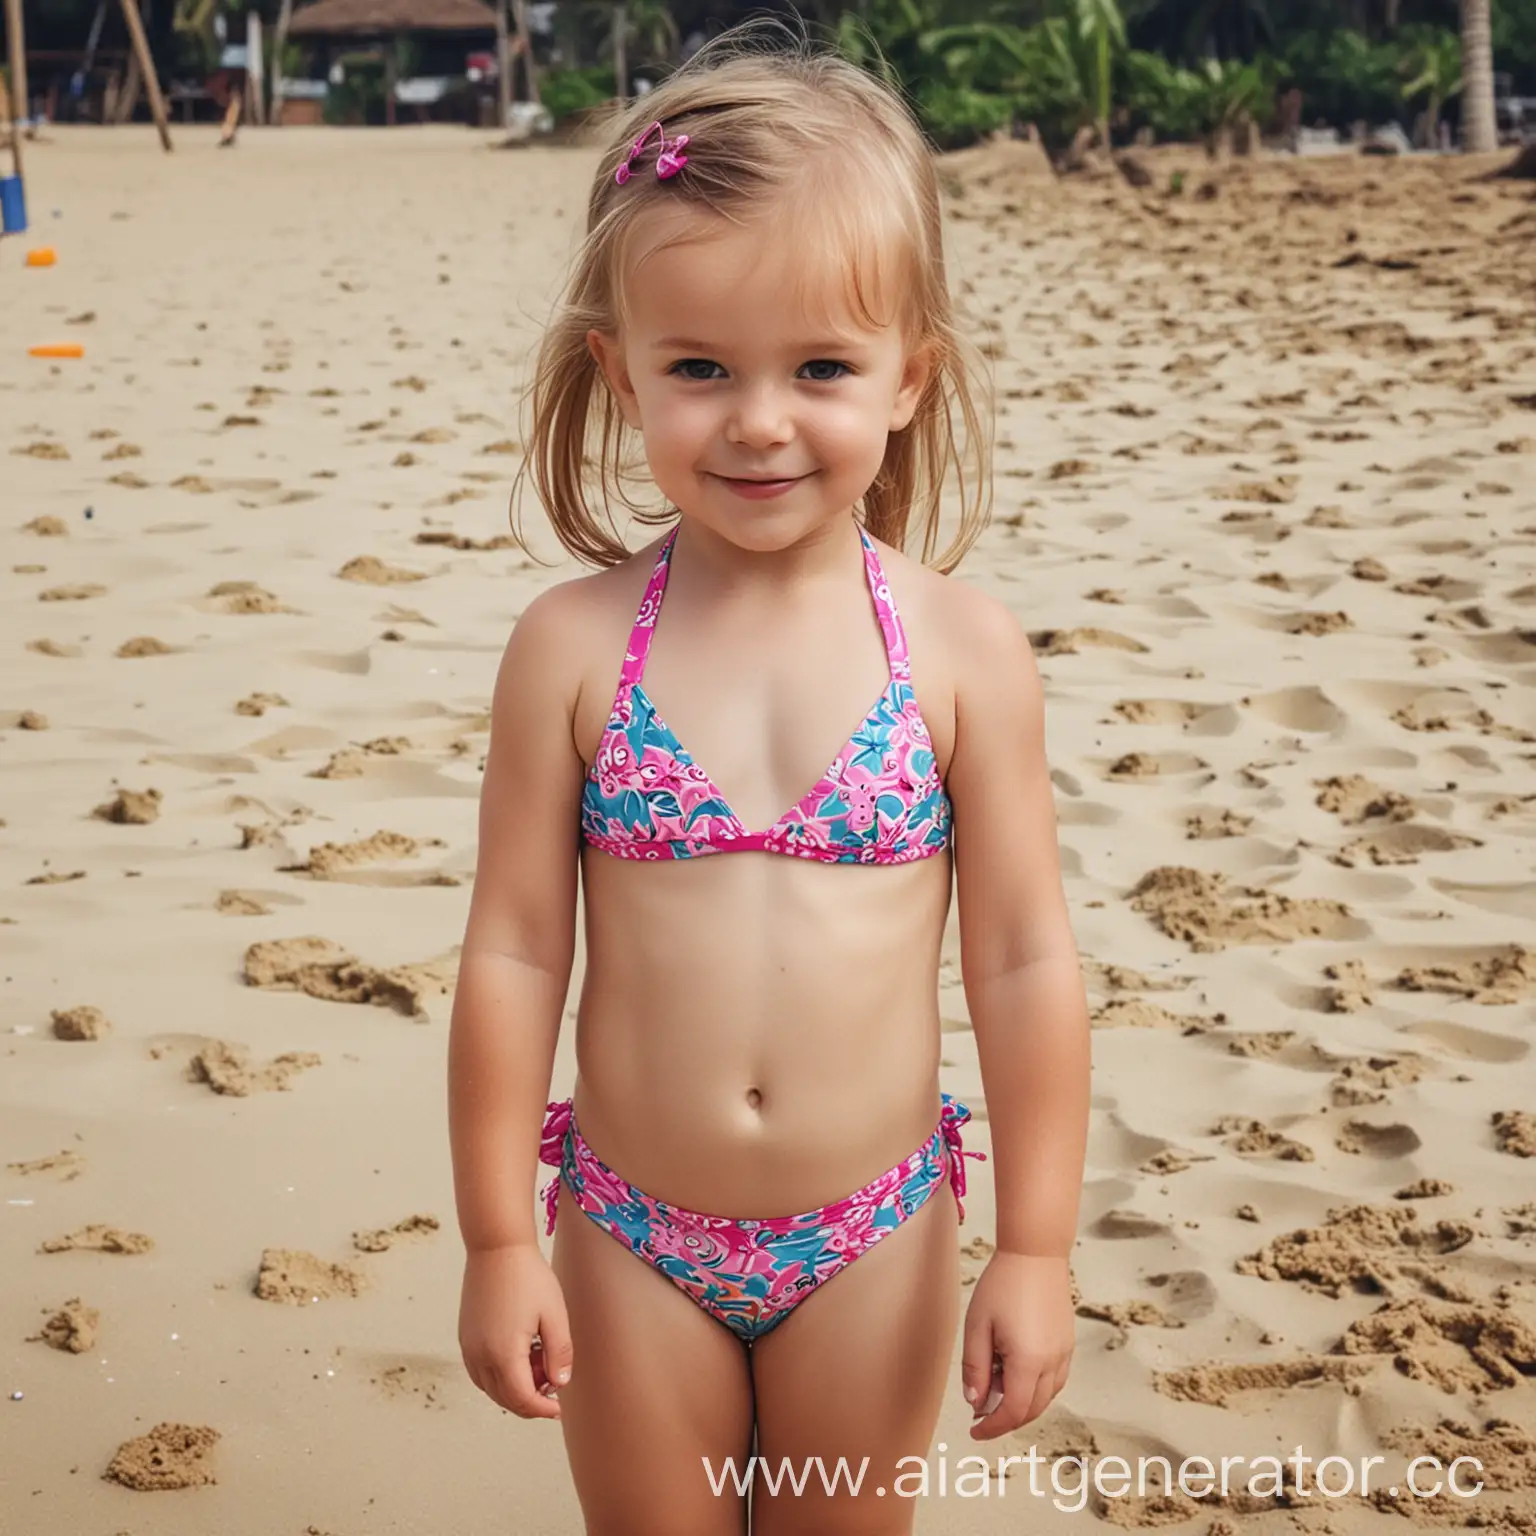 Adorable-3YearOld-Girl-in-Colorful-Bikini-Enjoying-Beach-Fun